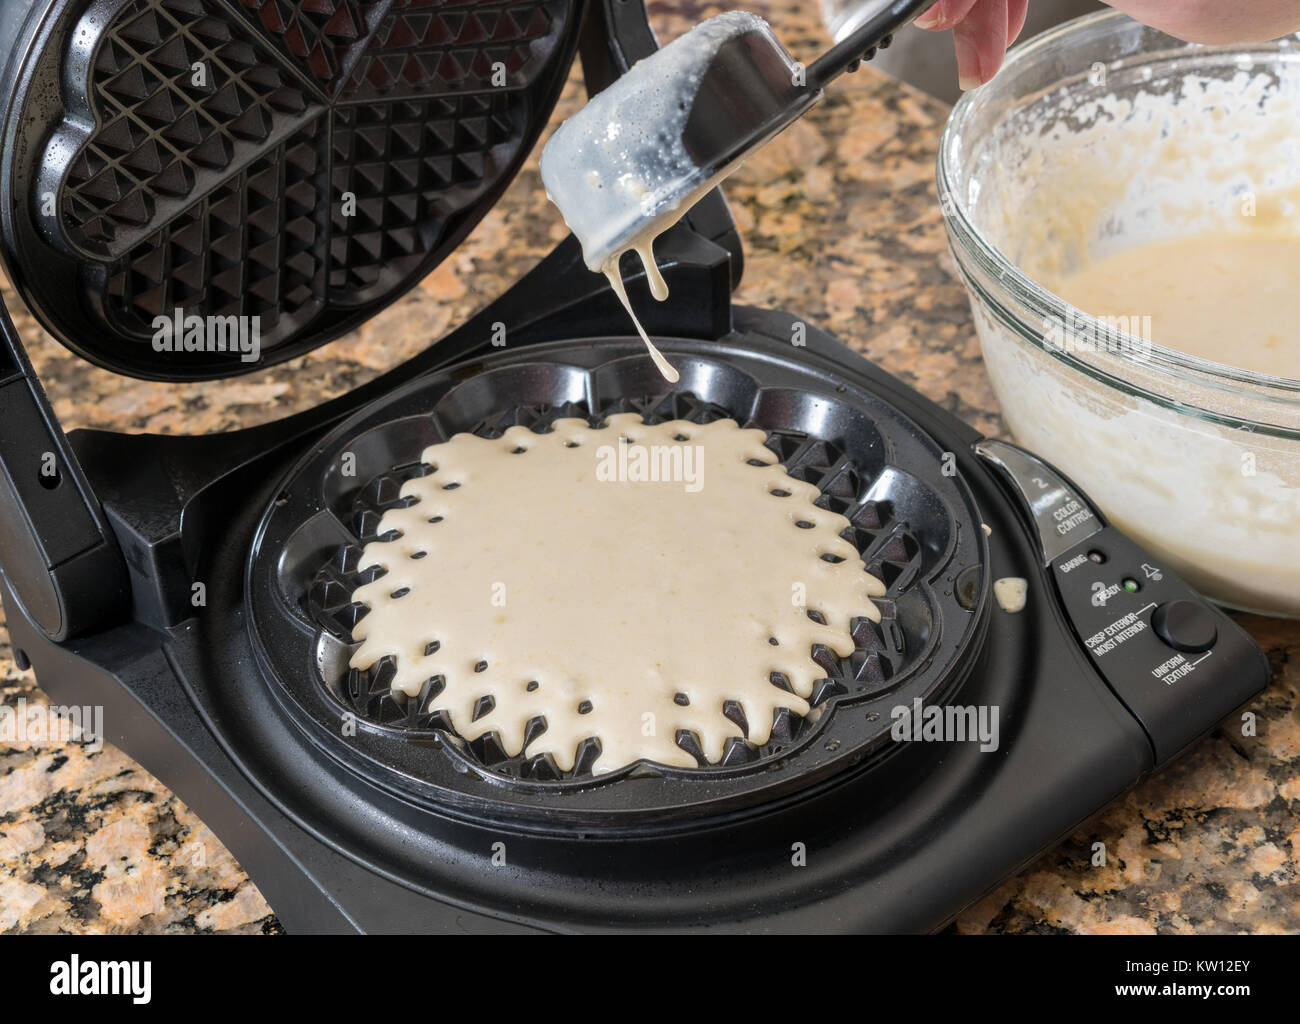 https://c8.alamy.com/compes/kw12ey/maquina-para-hacer-waffles-noruegos-o-hierro-kw12ey.jpg